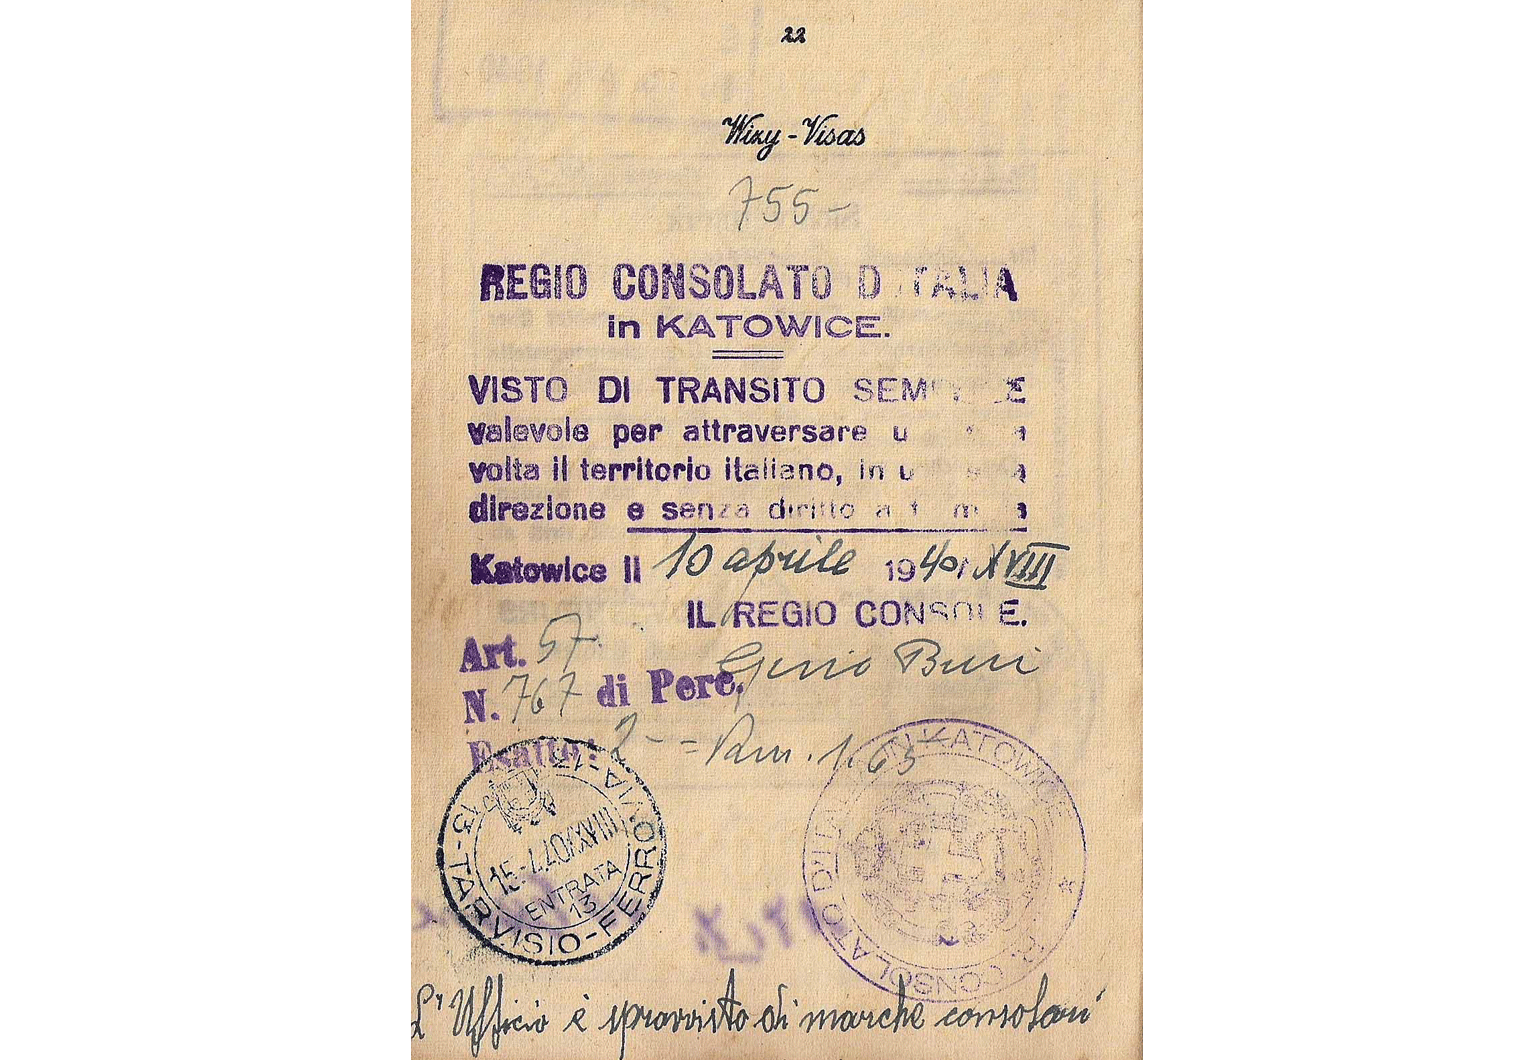 WW2 life-saving visa